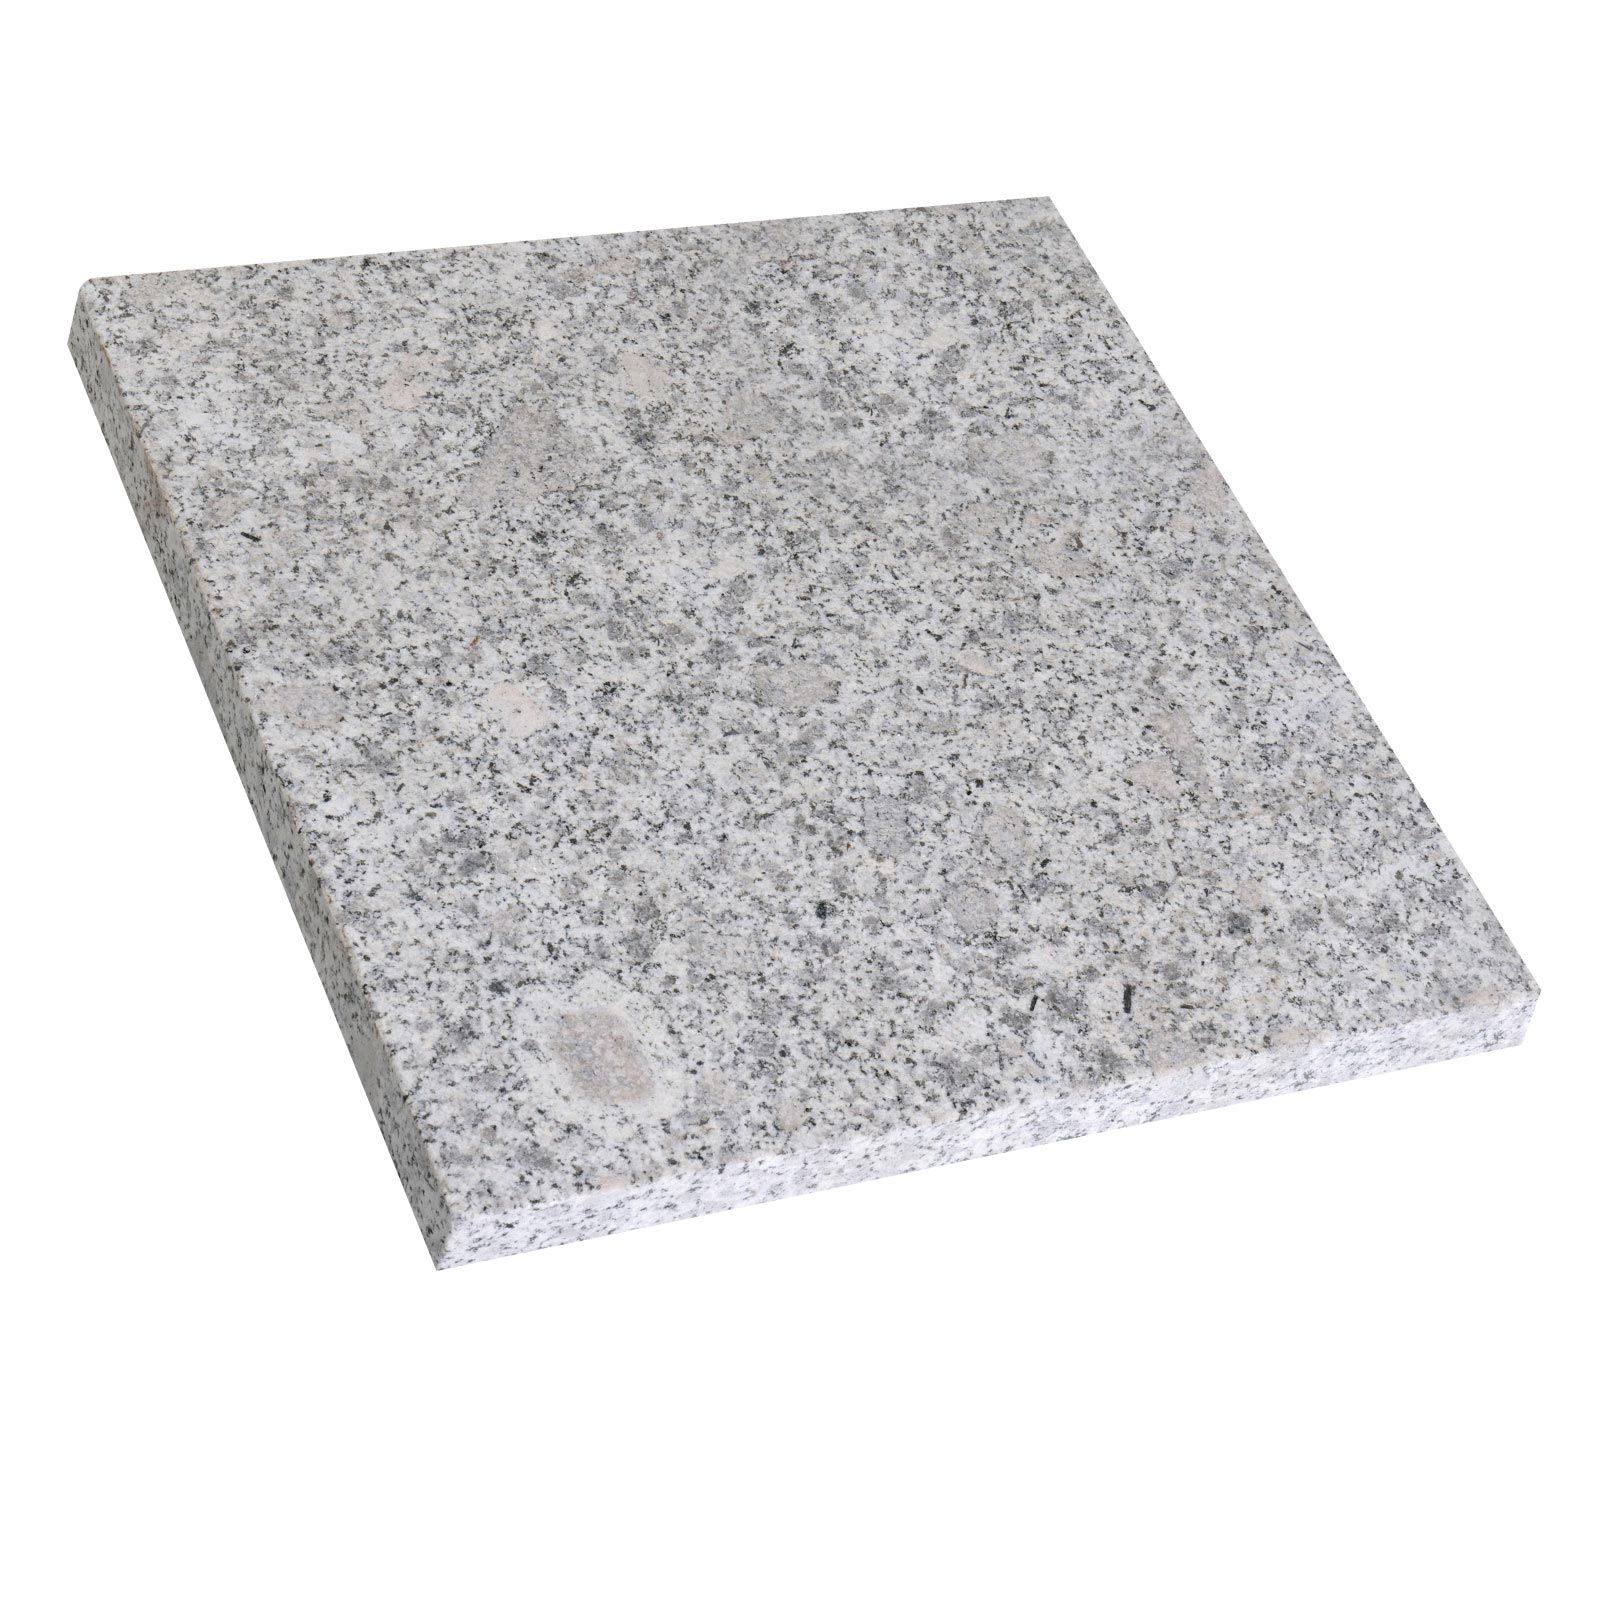 Płytki Granit Fustone płomieniowany 60x60x2 cm